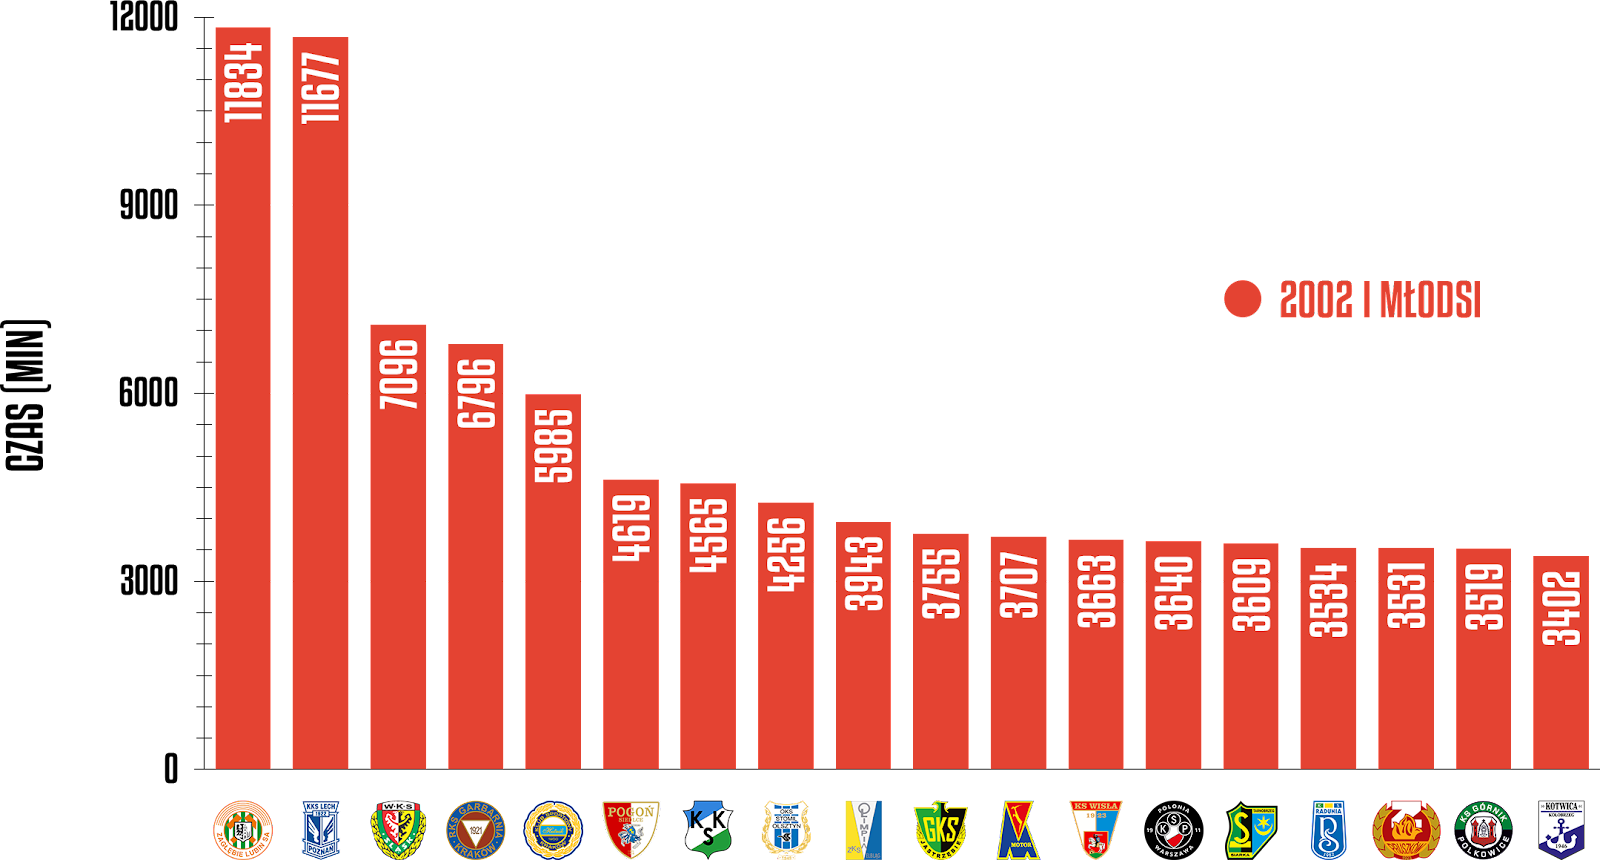 Klasyfikacja klubów pod względem rozegranego czasu przez młodzieżowców w eWinner 2 Ligi 2022/23<br><br>Źródło: Opracowanie własne na podstawie 90minut.pl<br><br>graf. Bartosz Urban